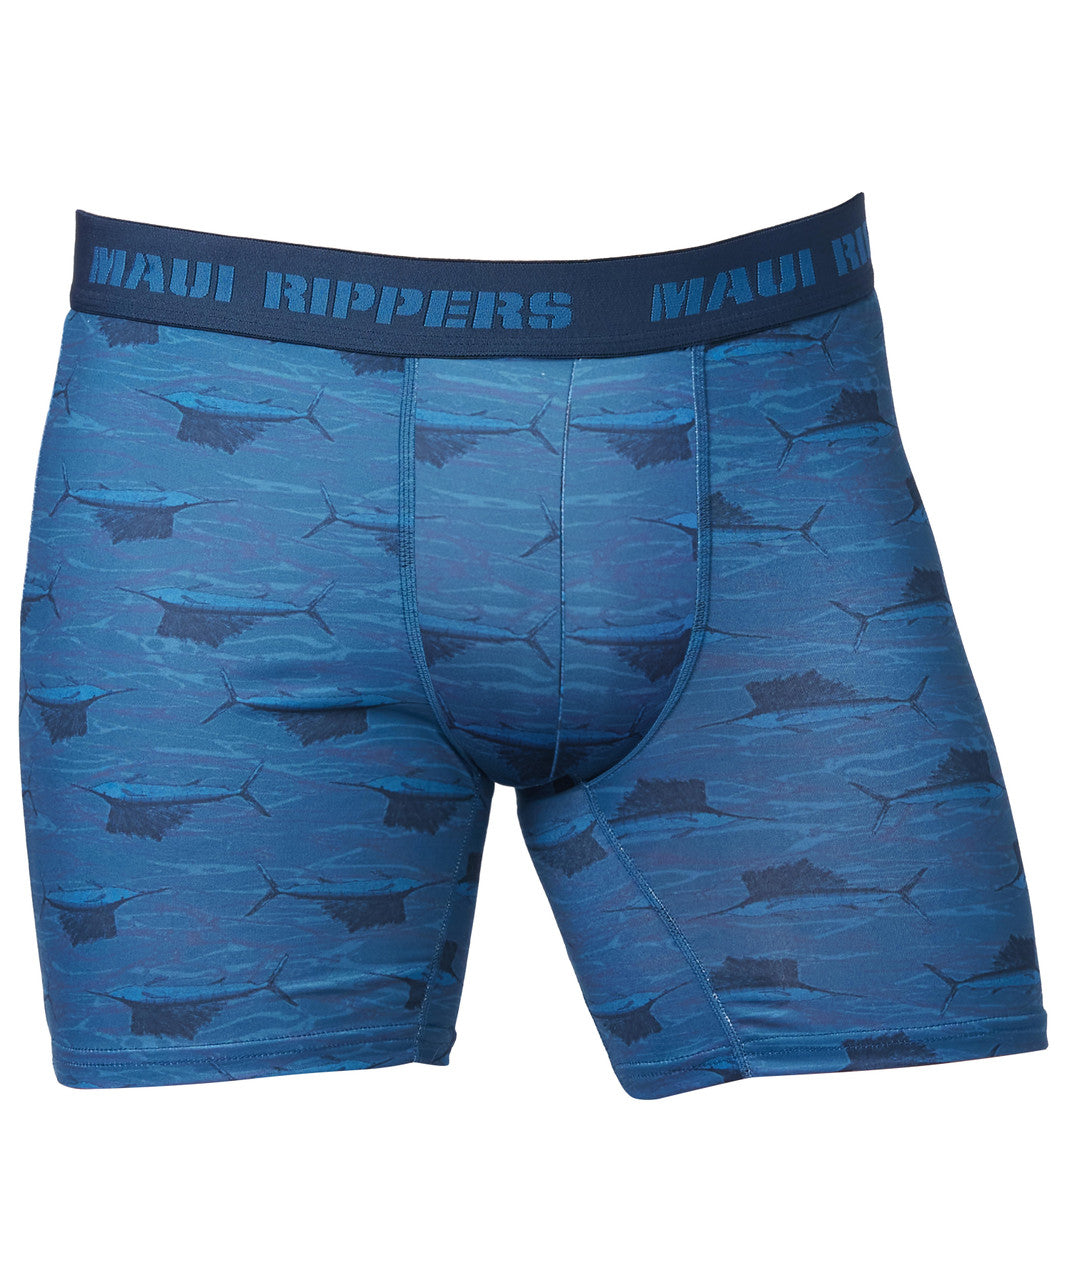 Under Armour 2 Pack Men Boxer Briefs 6 in Underwear Mod Men Black Blue Logo